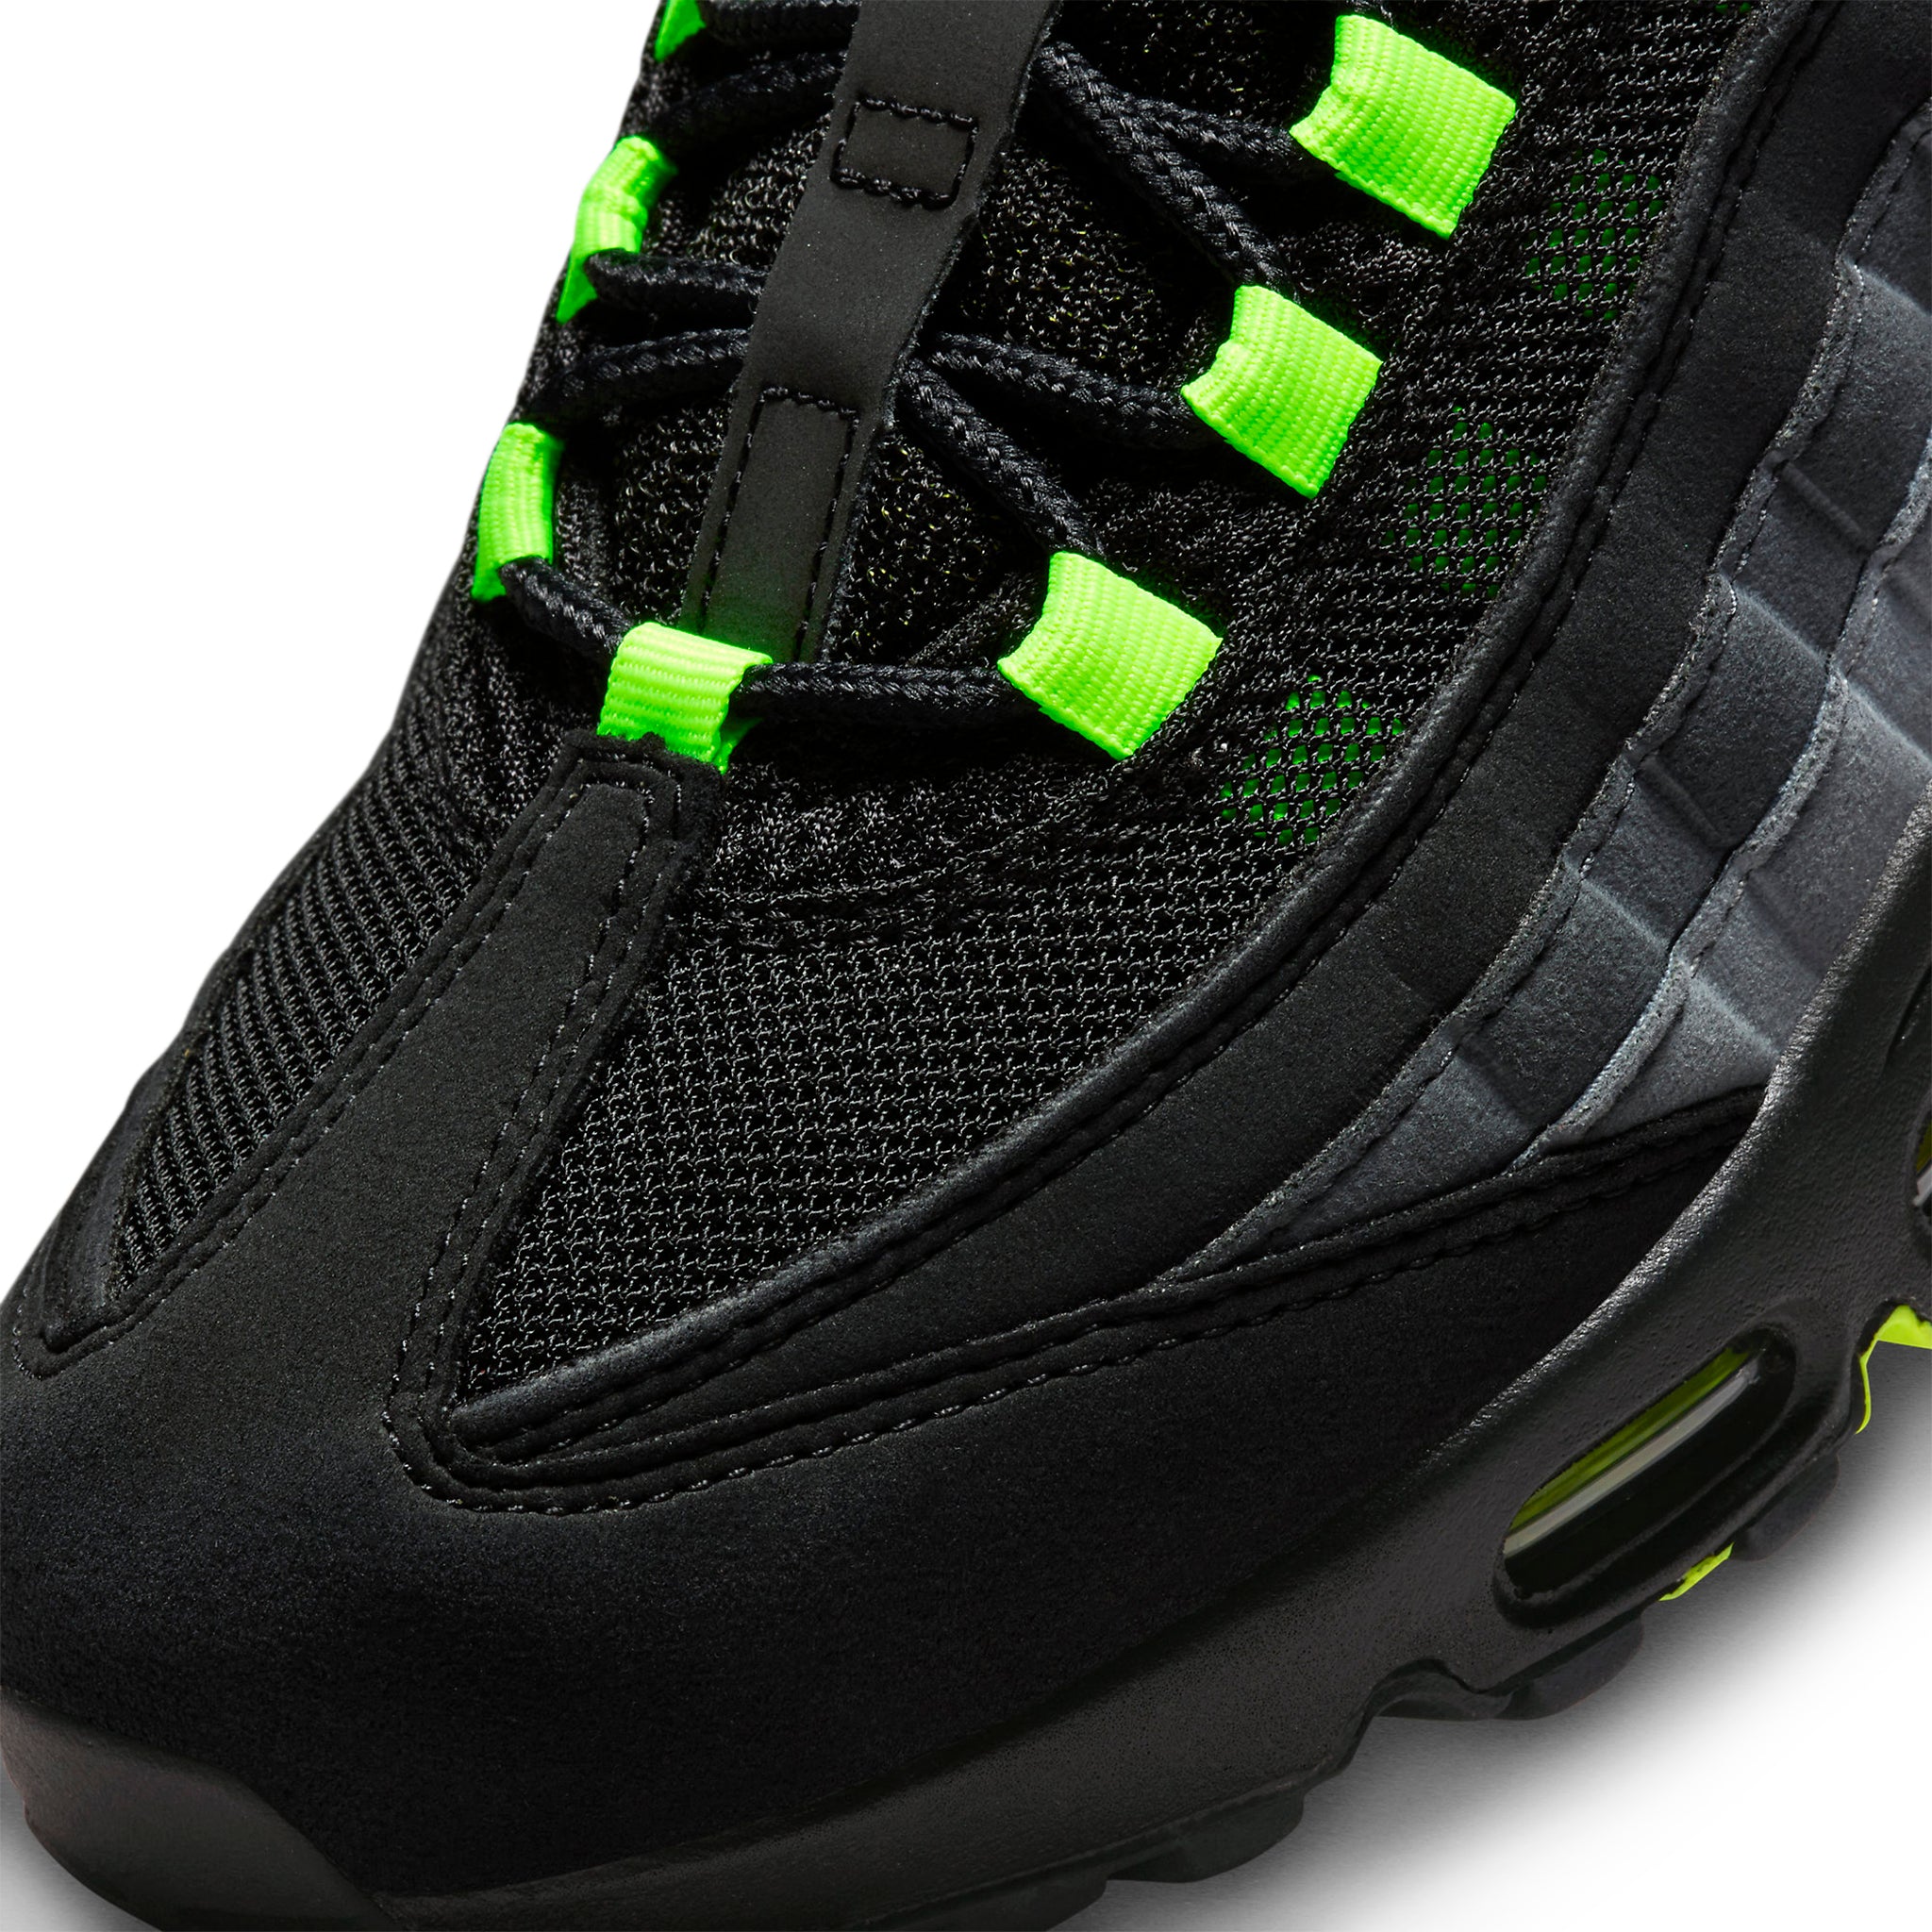 Toe box view of Nike Air Max 95 Black Neon FV4710-001